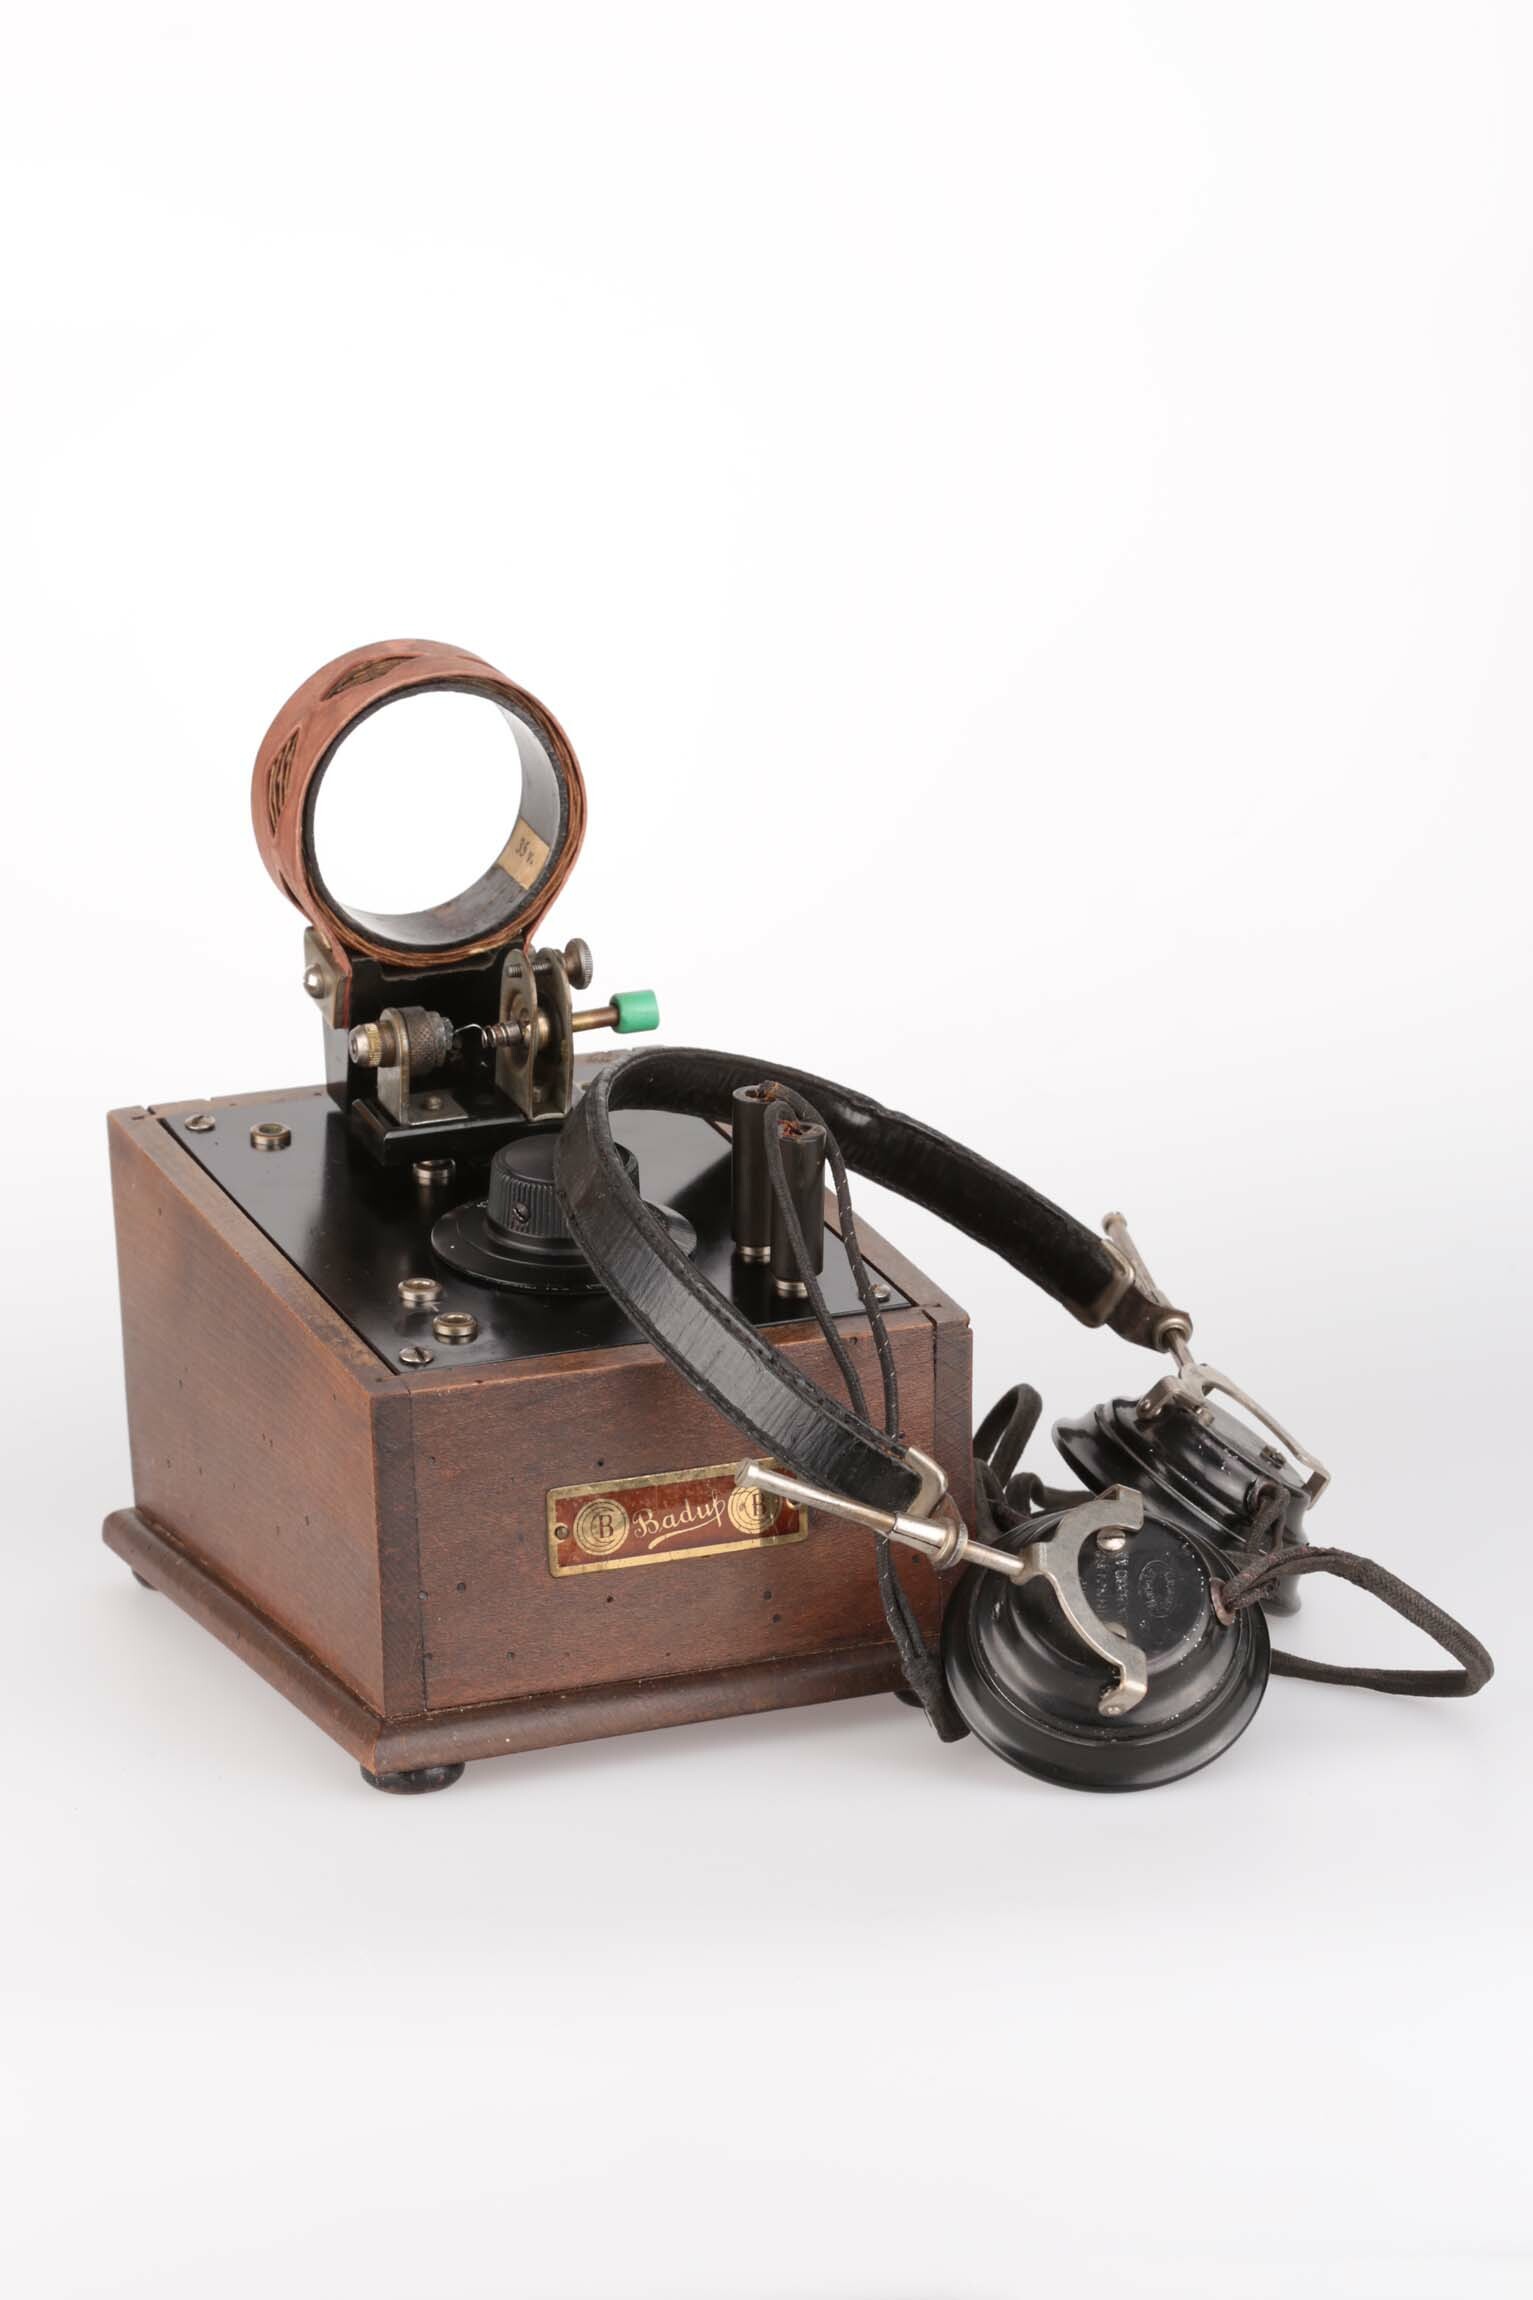 Detektorempfänger, BADUF, Furtwangen / Gütenbach, um 1925 (Deutsches Uhrenmuseum CC BY-SA)